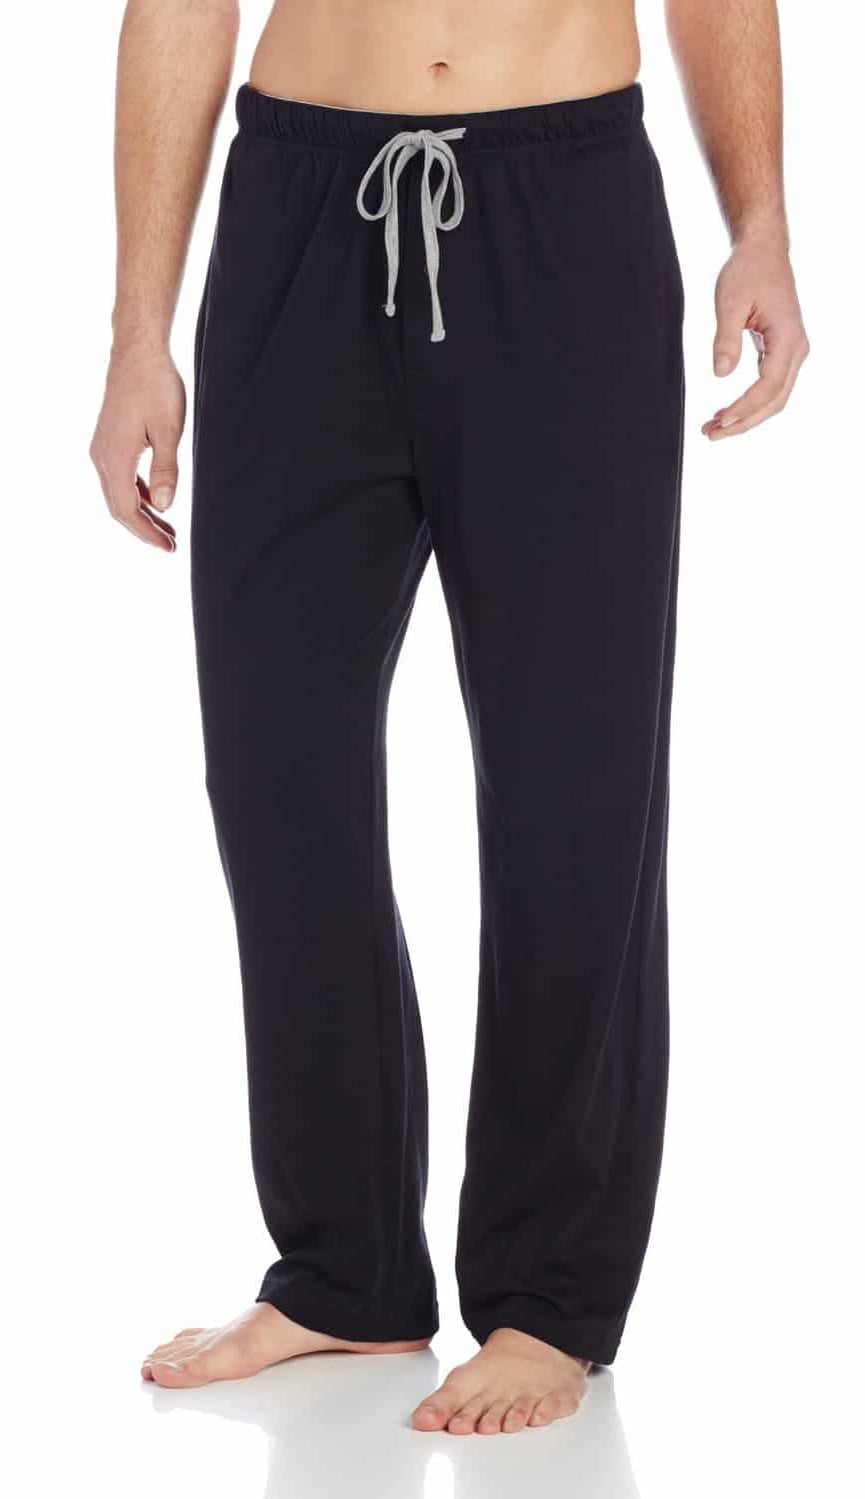 Hanes Men's Solid Knit Pant (Black, XL) - Walmart.com